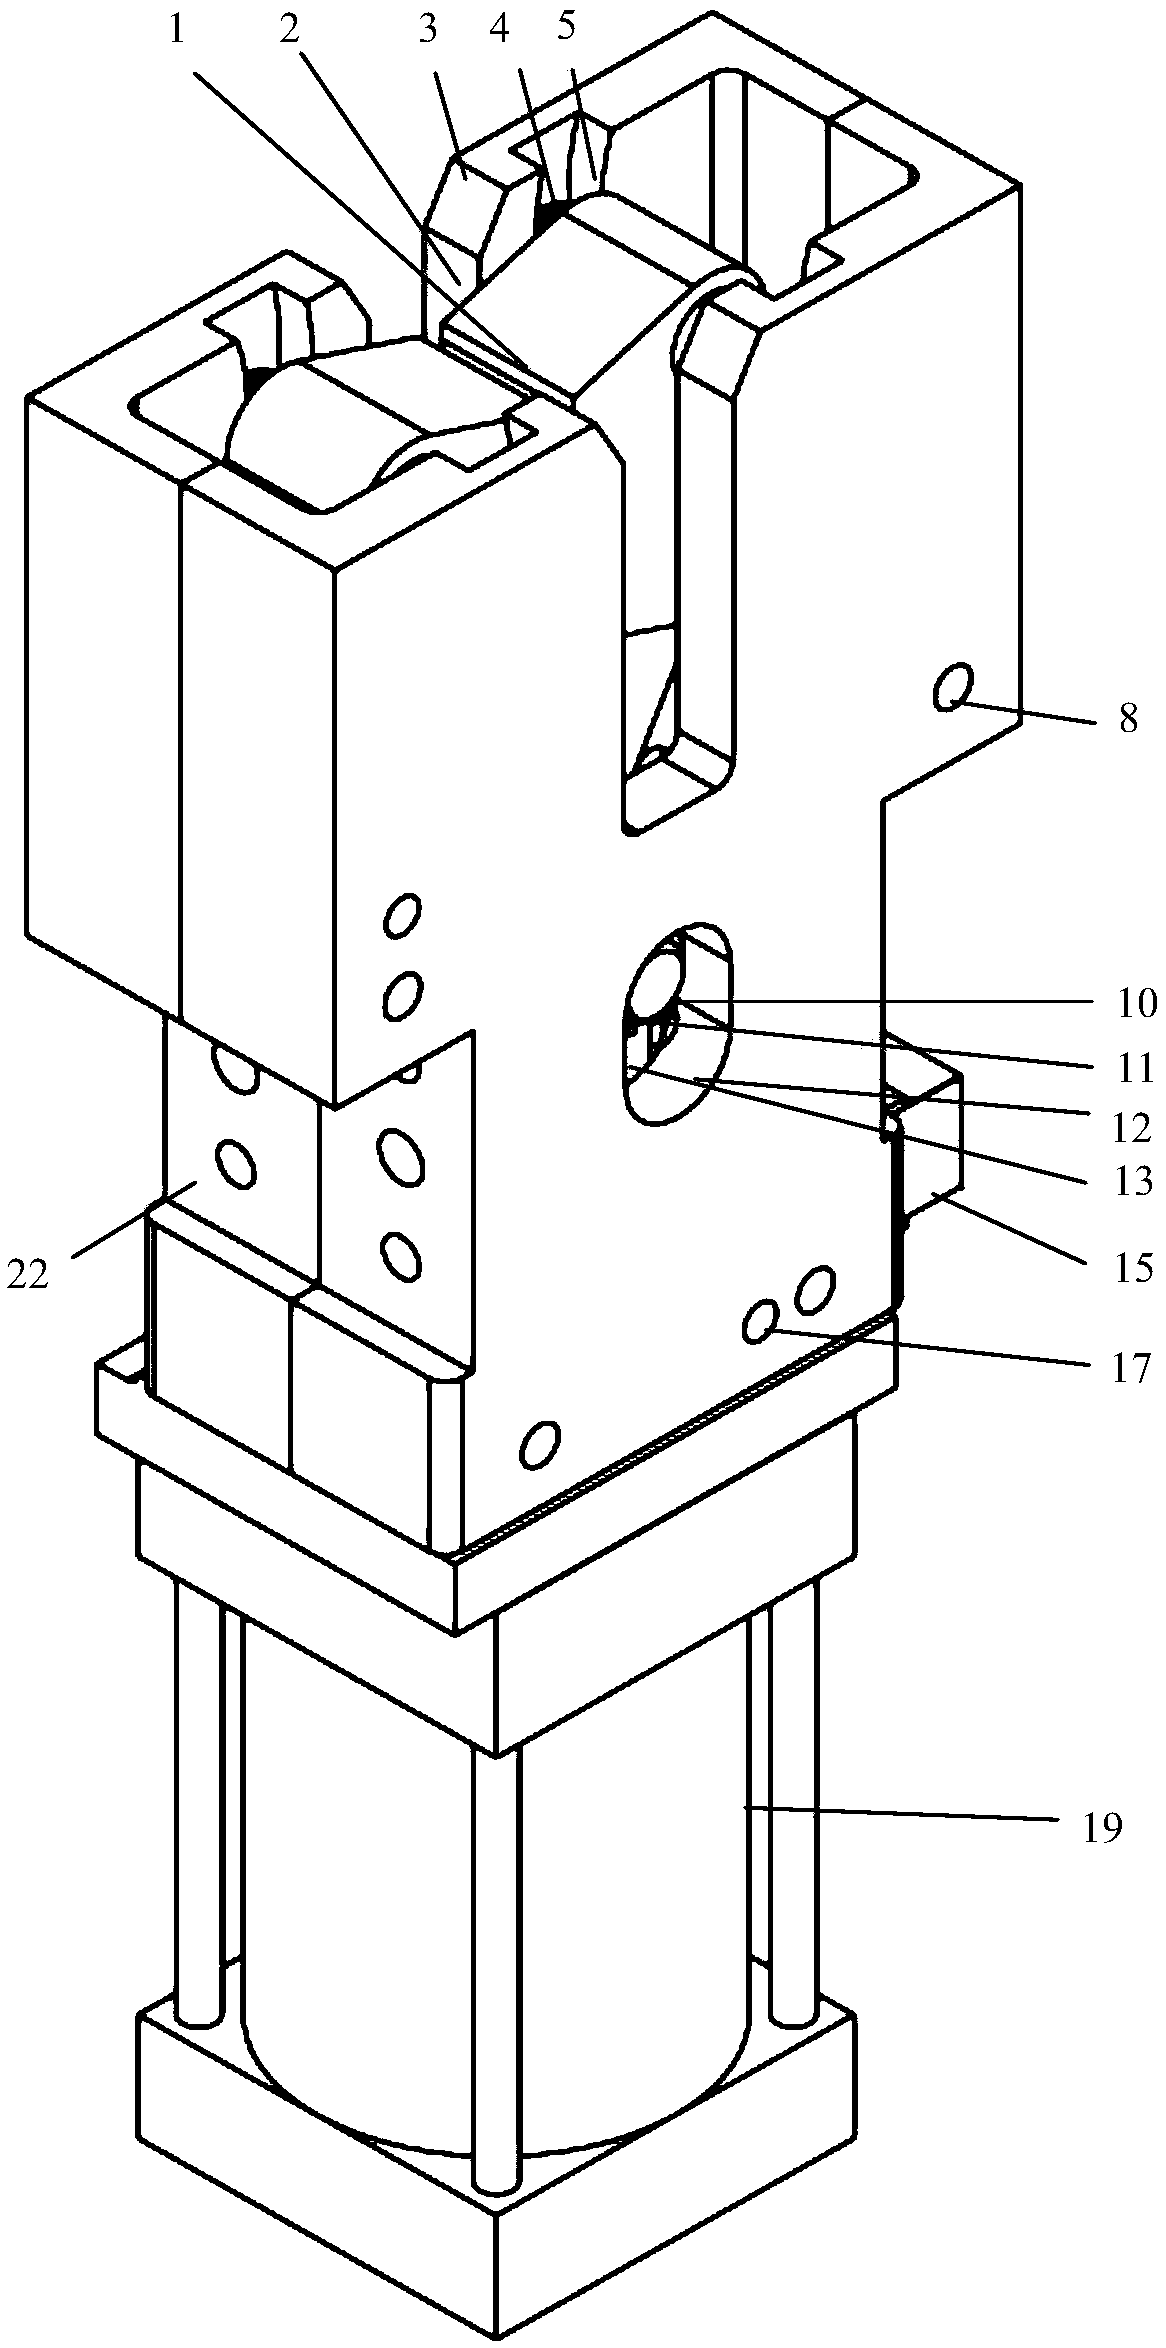 Plate shearing sliding groove type robot griper